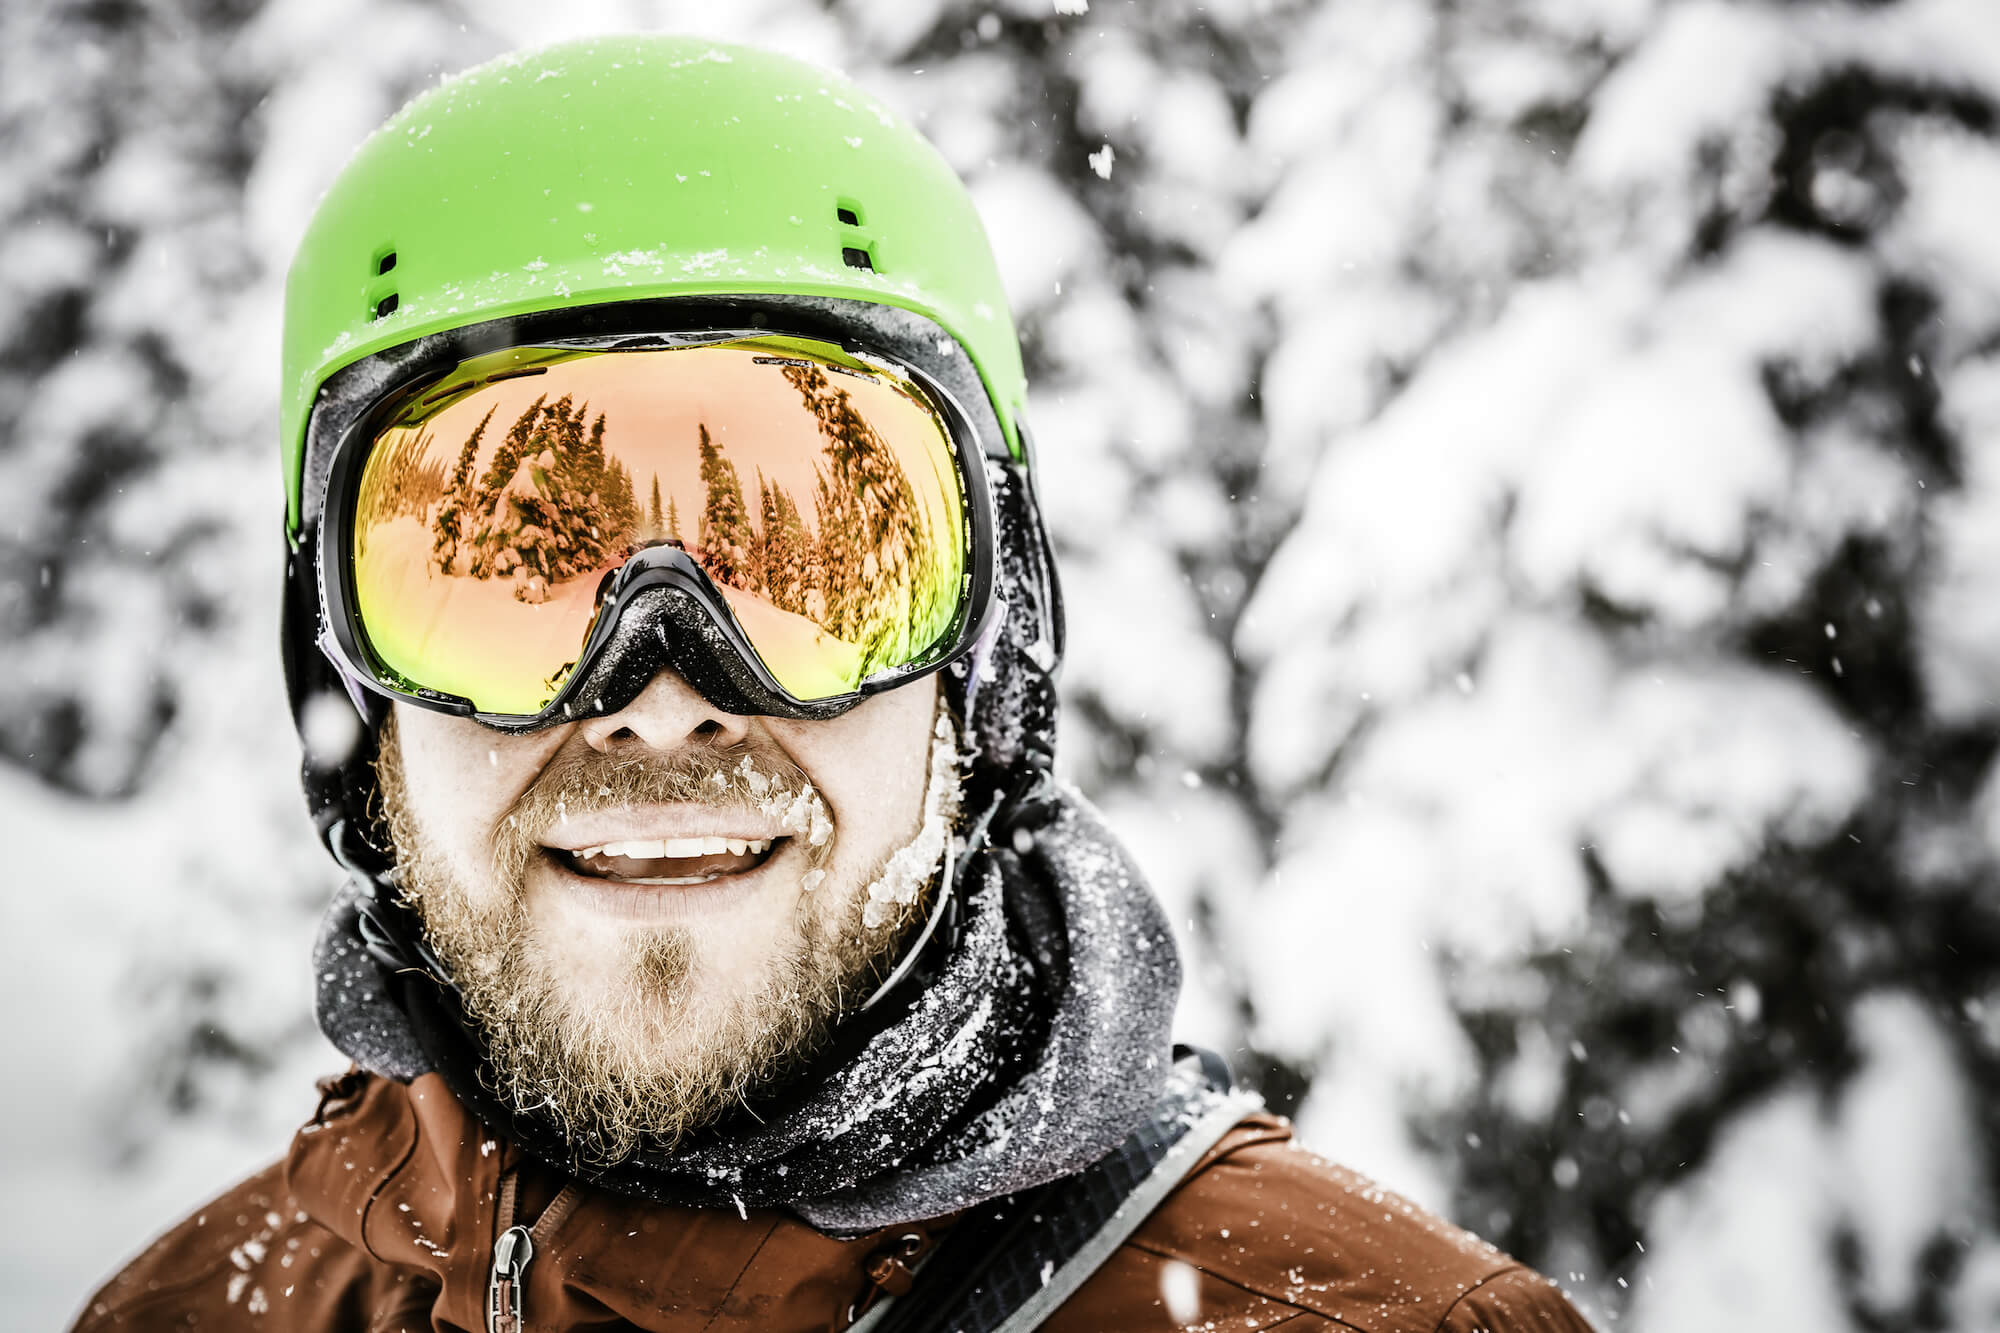 Comment bien choisir son masque de ski ?